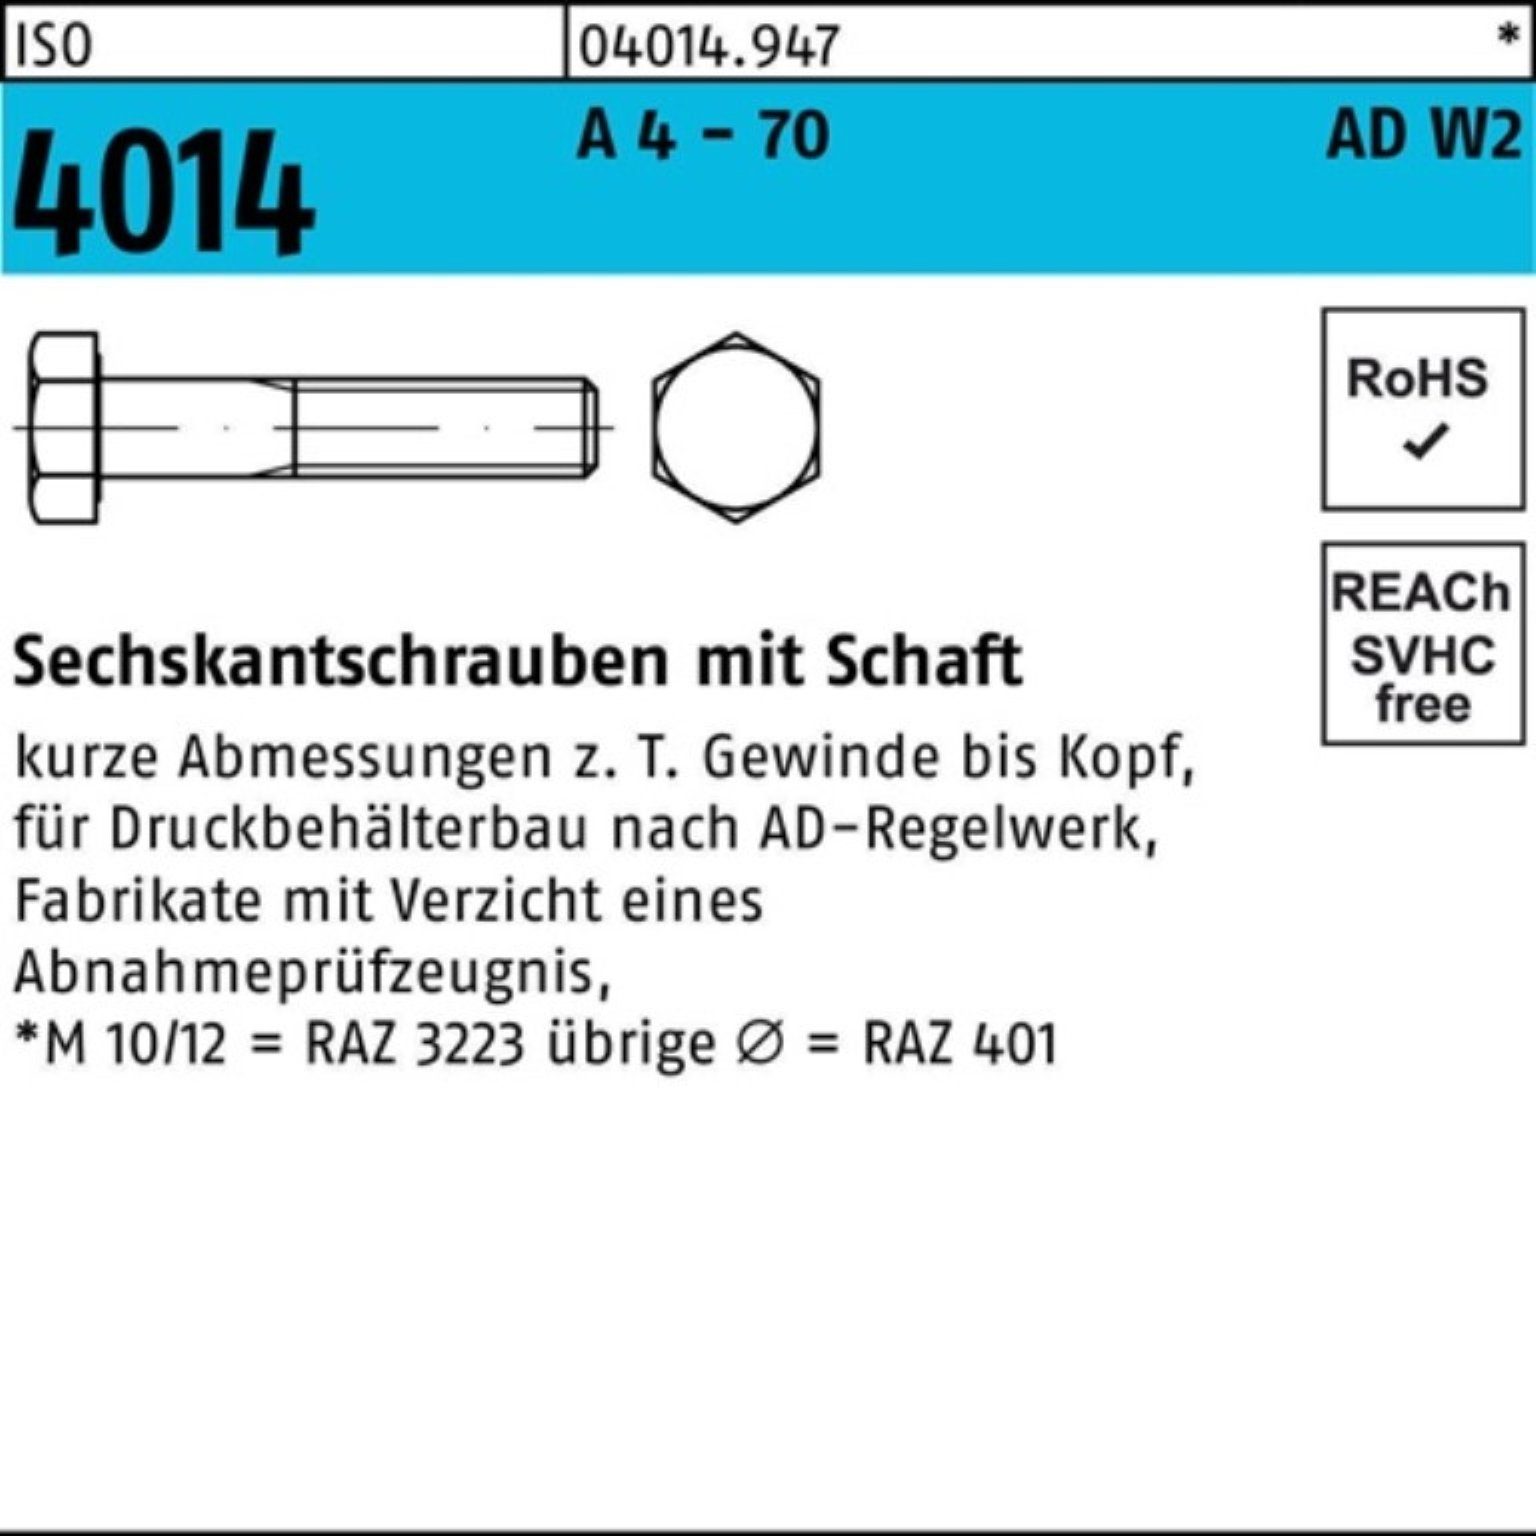 Bufab Sechskantschraube 100er Pack Sechskantschraube ISO 4014 Schaft M12x 50 A 4 - 70 AD-W2 50